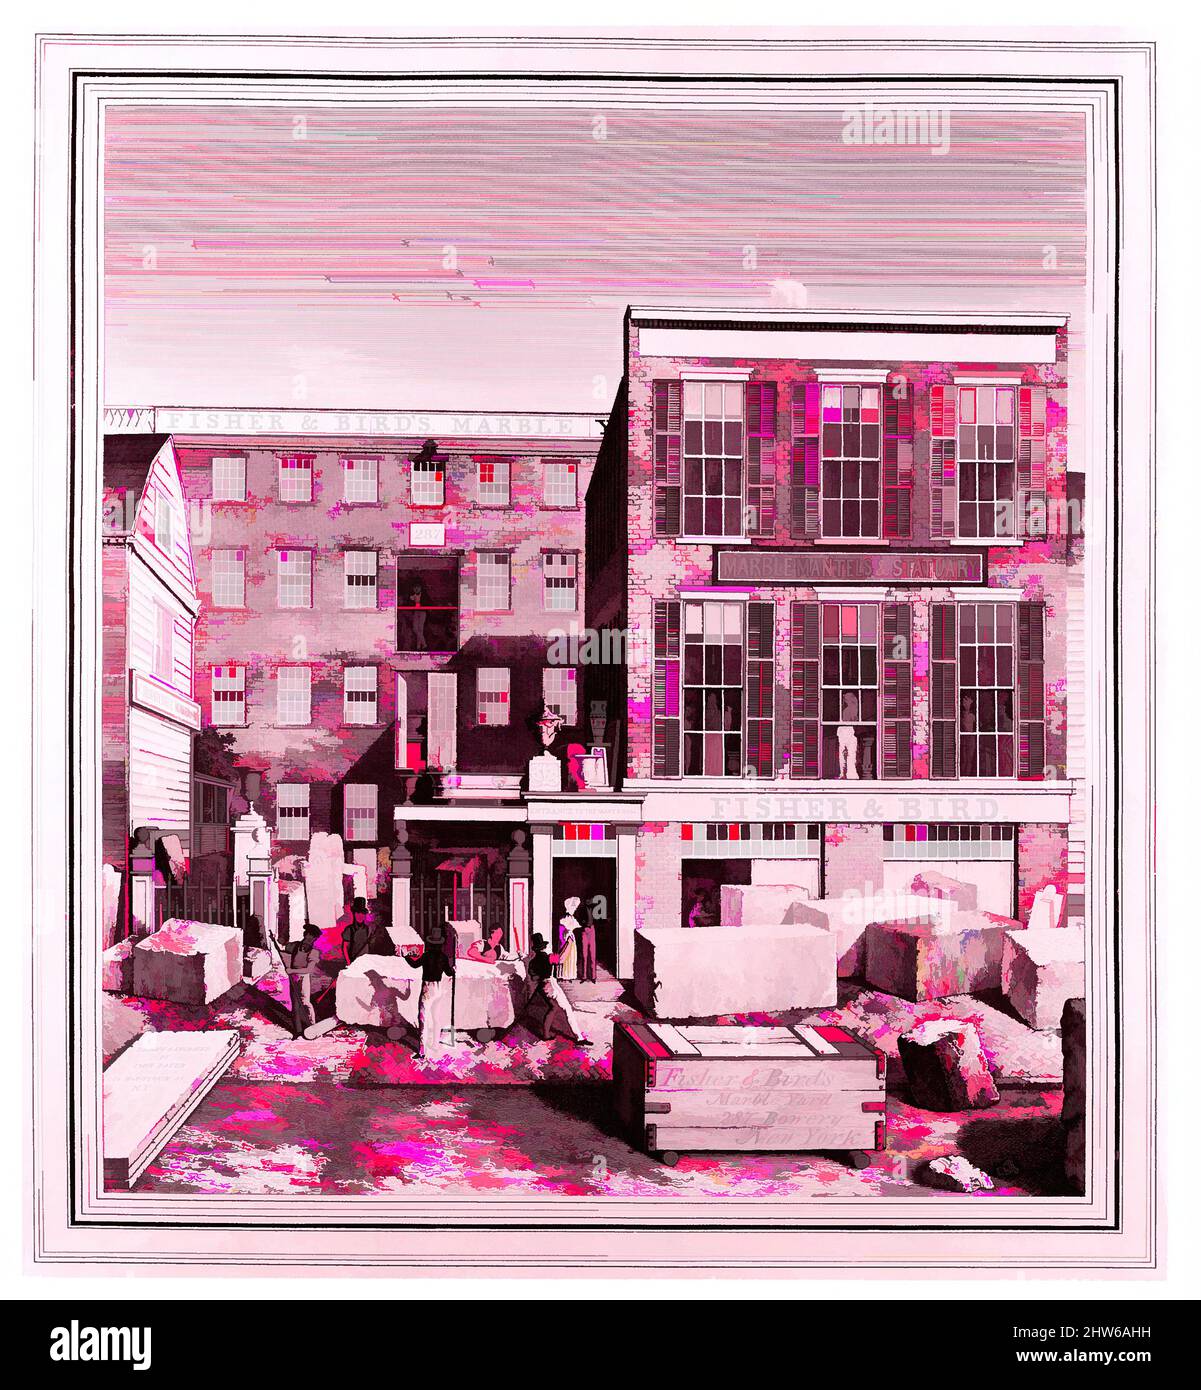 Art inspiré par Fisher & Bird's Marble Yard, 287 Bowery, New York, Californie 1836, gravure, image : 9 7/8 x 8 7/8 cm (25,1 x 22,5 cm), Prints, John Baker (américain, actif 1830–40, œuvres classiques modernisées par Artotop avec une touche de modernité. Formes, couleur et valeur, impact visuel accrocheur sur l'art émotions par la liberté d'œuvres d'art d'une manière contemporaine. Un message intemporel qui cherche une nouvelle direction créative. Artistes qui se tournent vers le support numérique et créent le NFT Artotop Banque D'Images